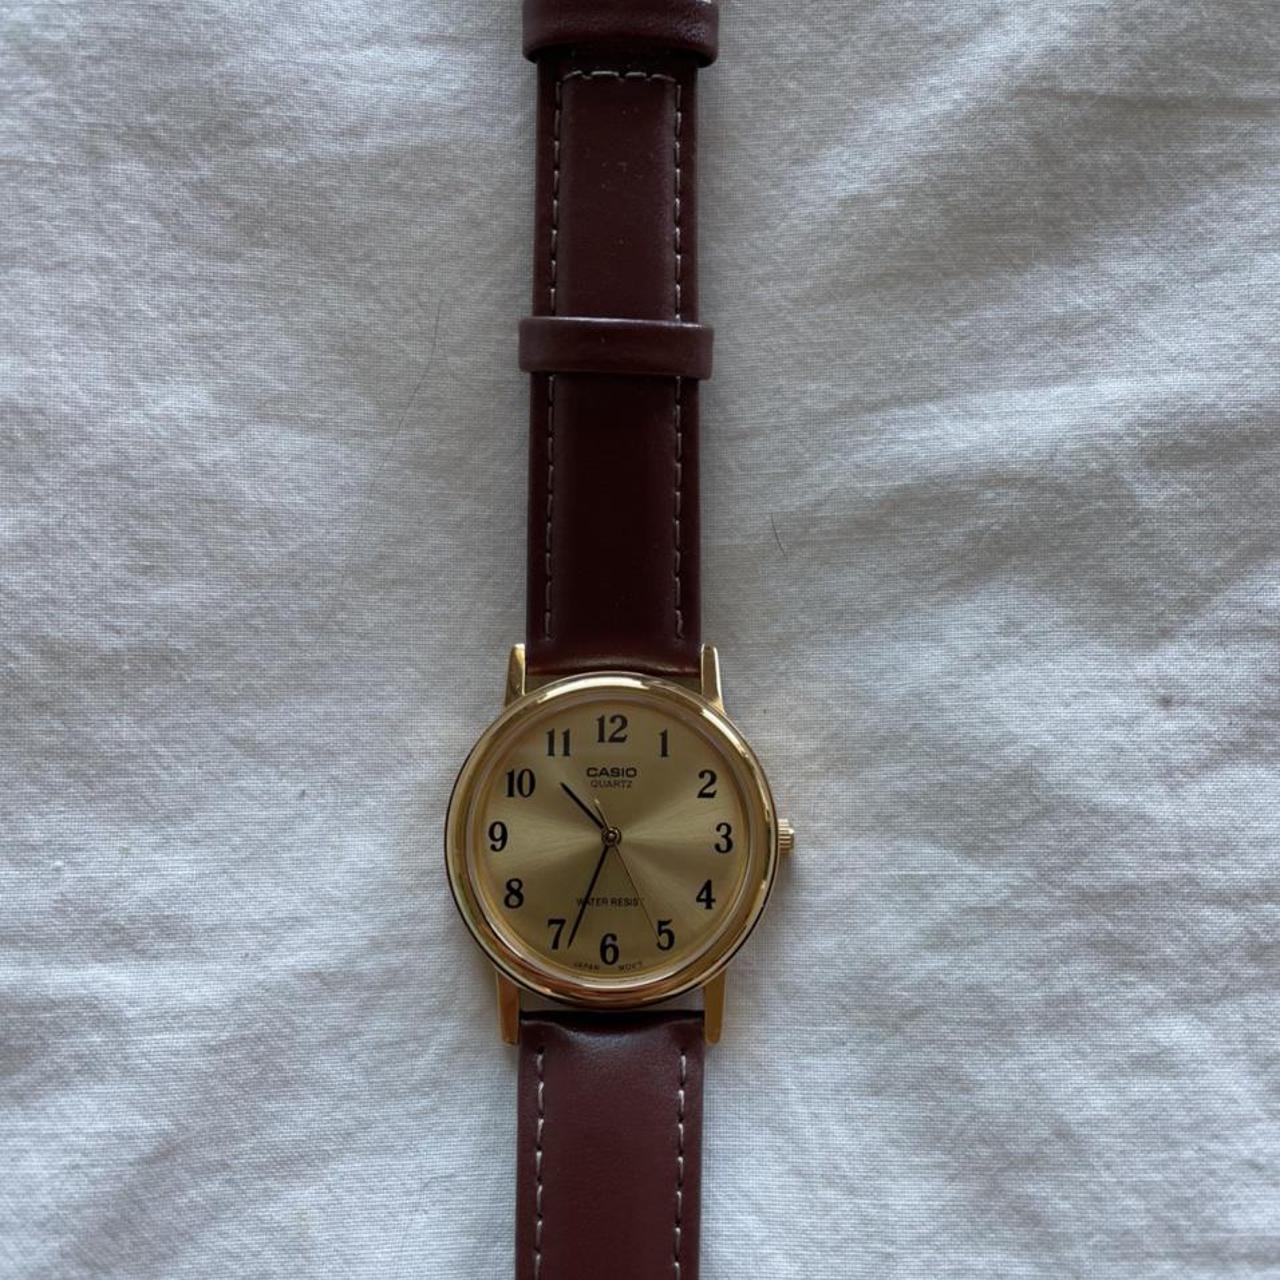 Product Image 2 - Casio quartz gold tone watch.